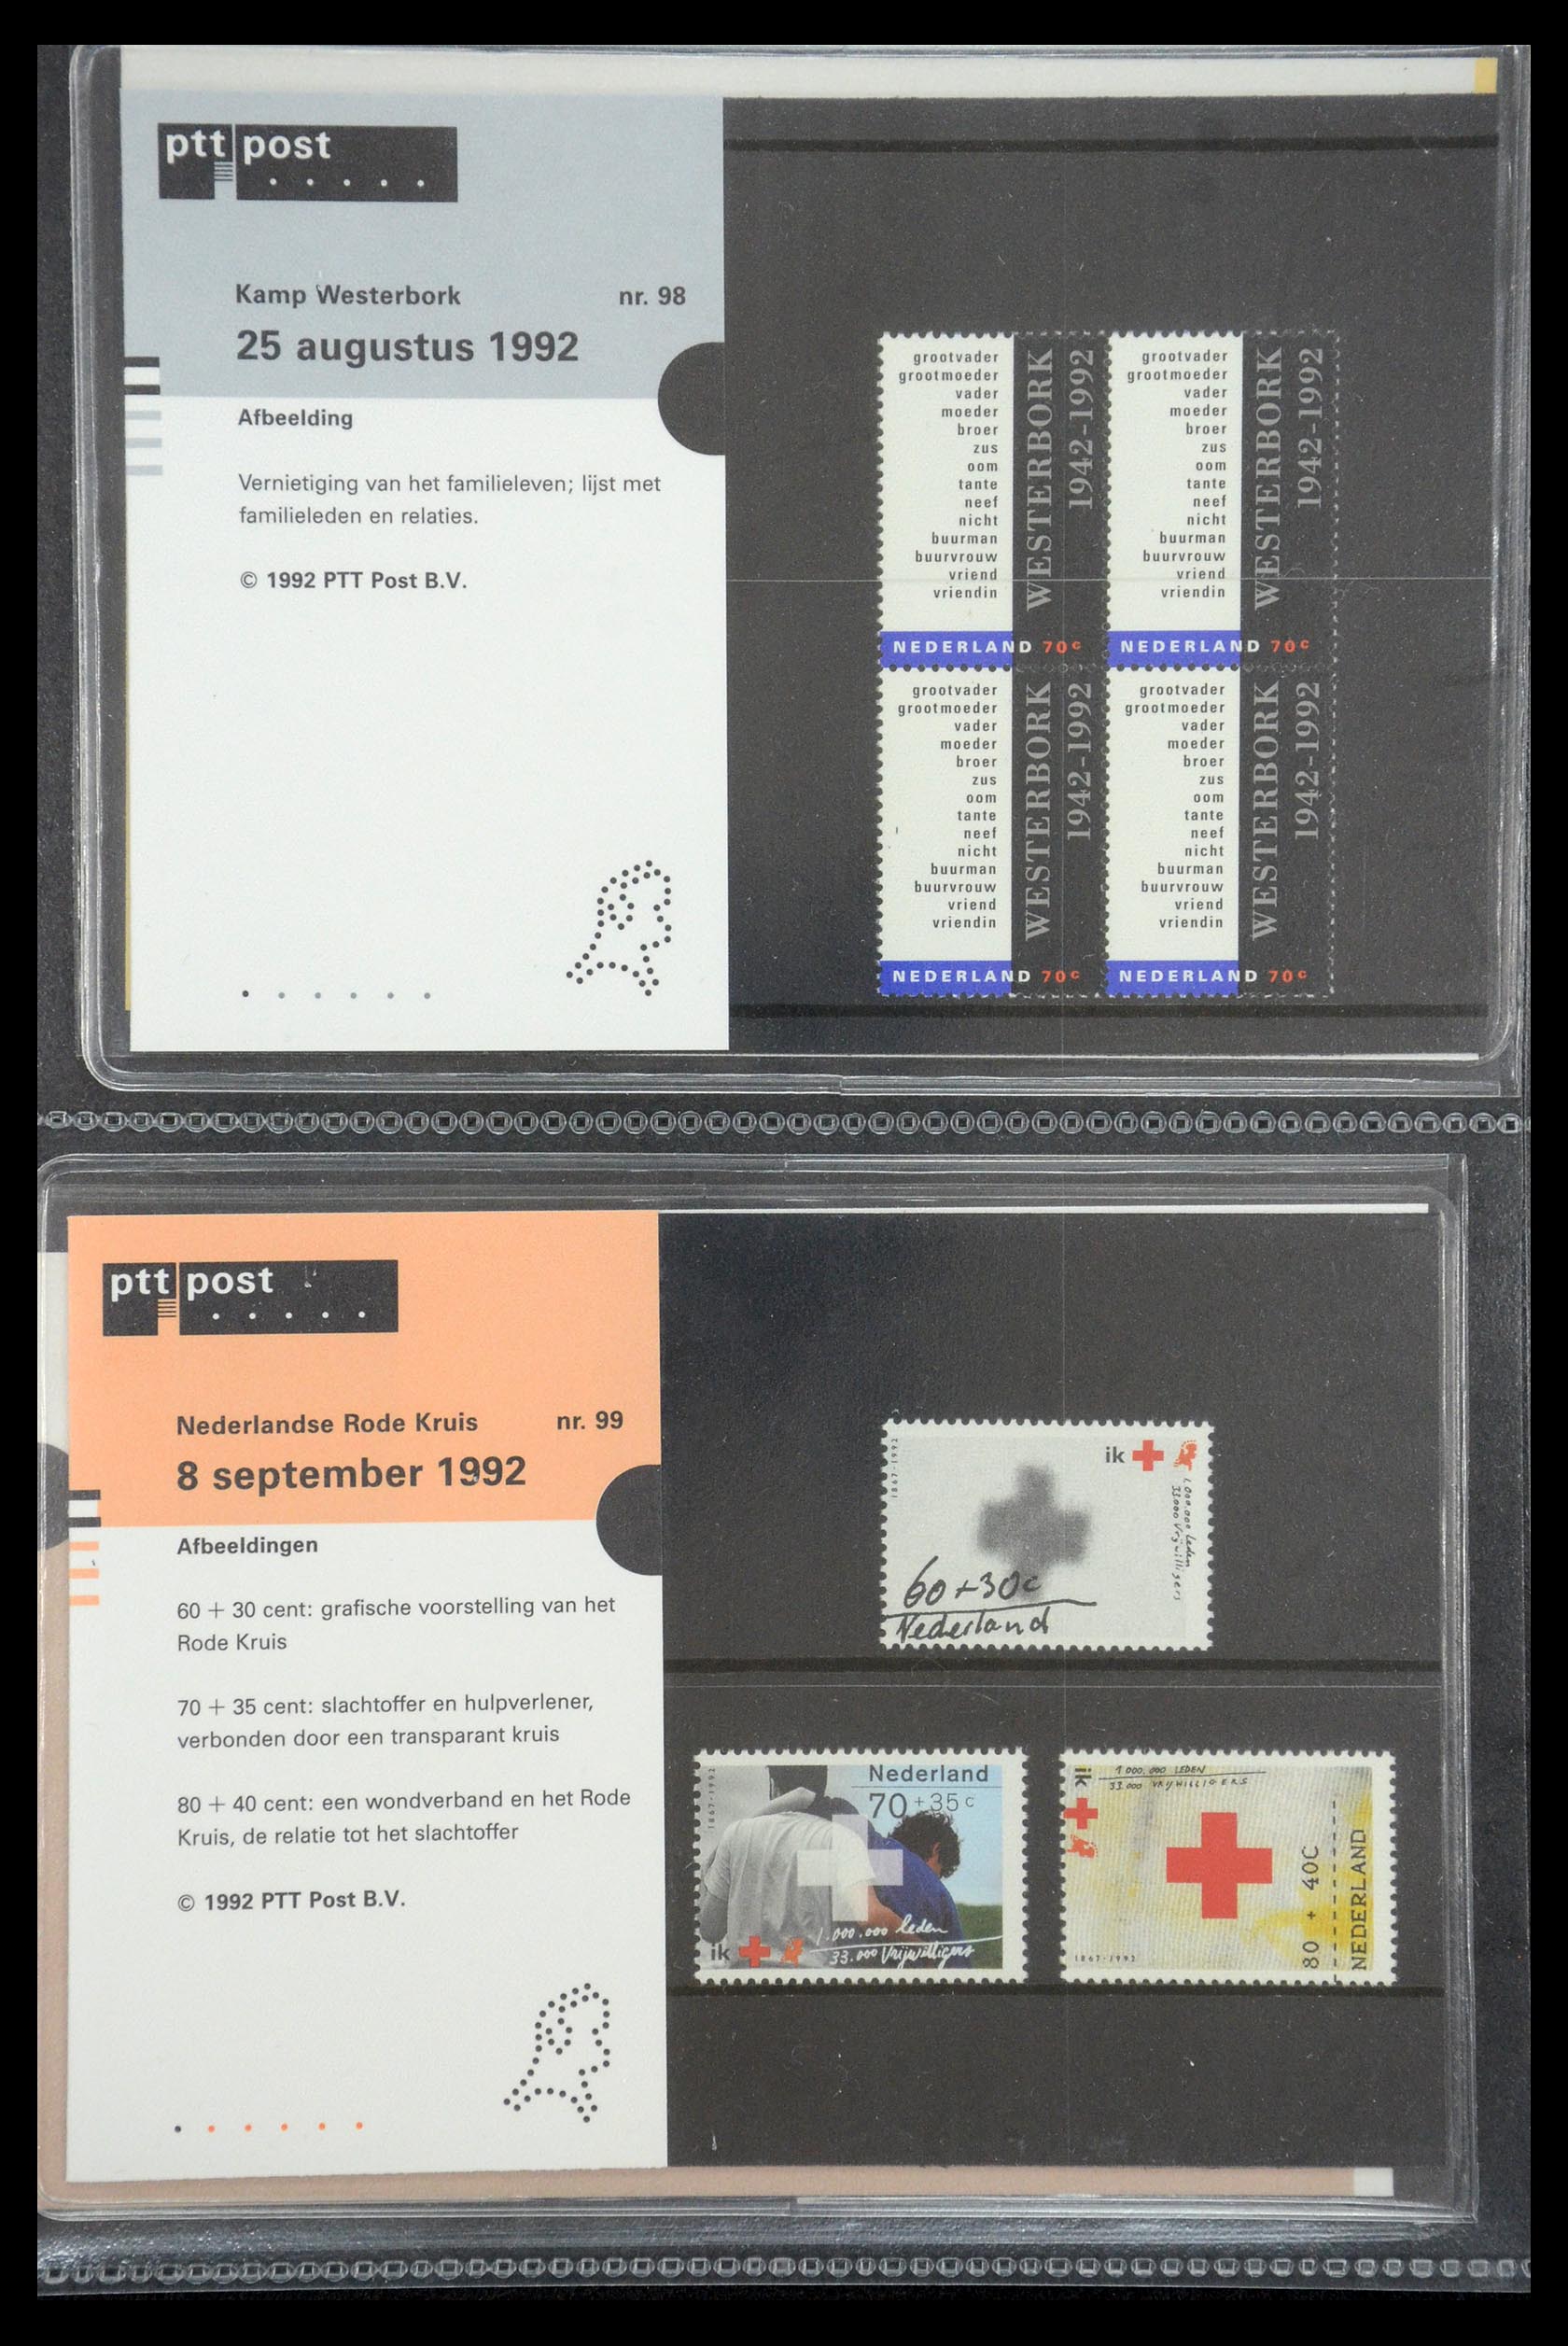 35187 050 - Stamp Collection 35187 Netherlands PTT presentation packs 1982-2019!